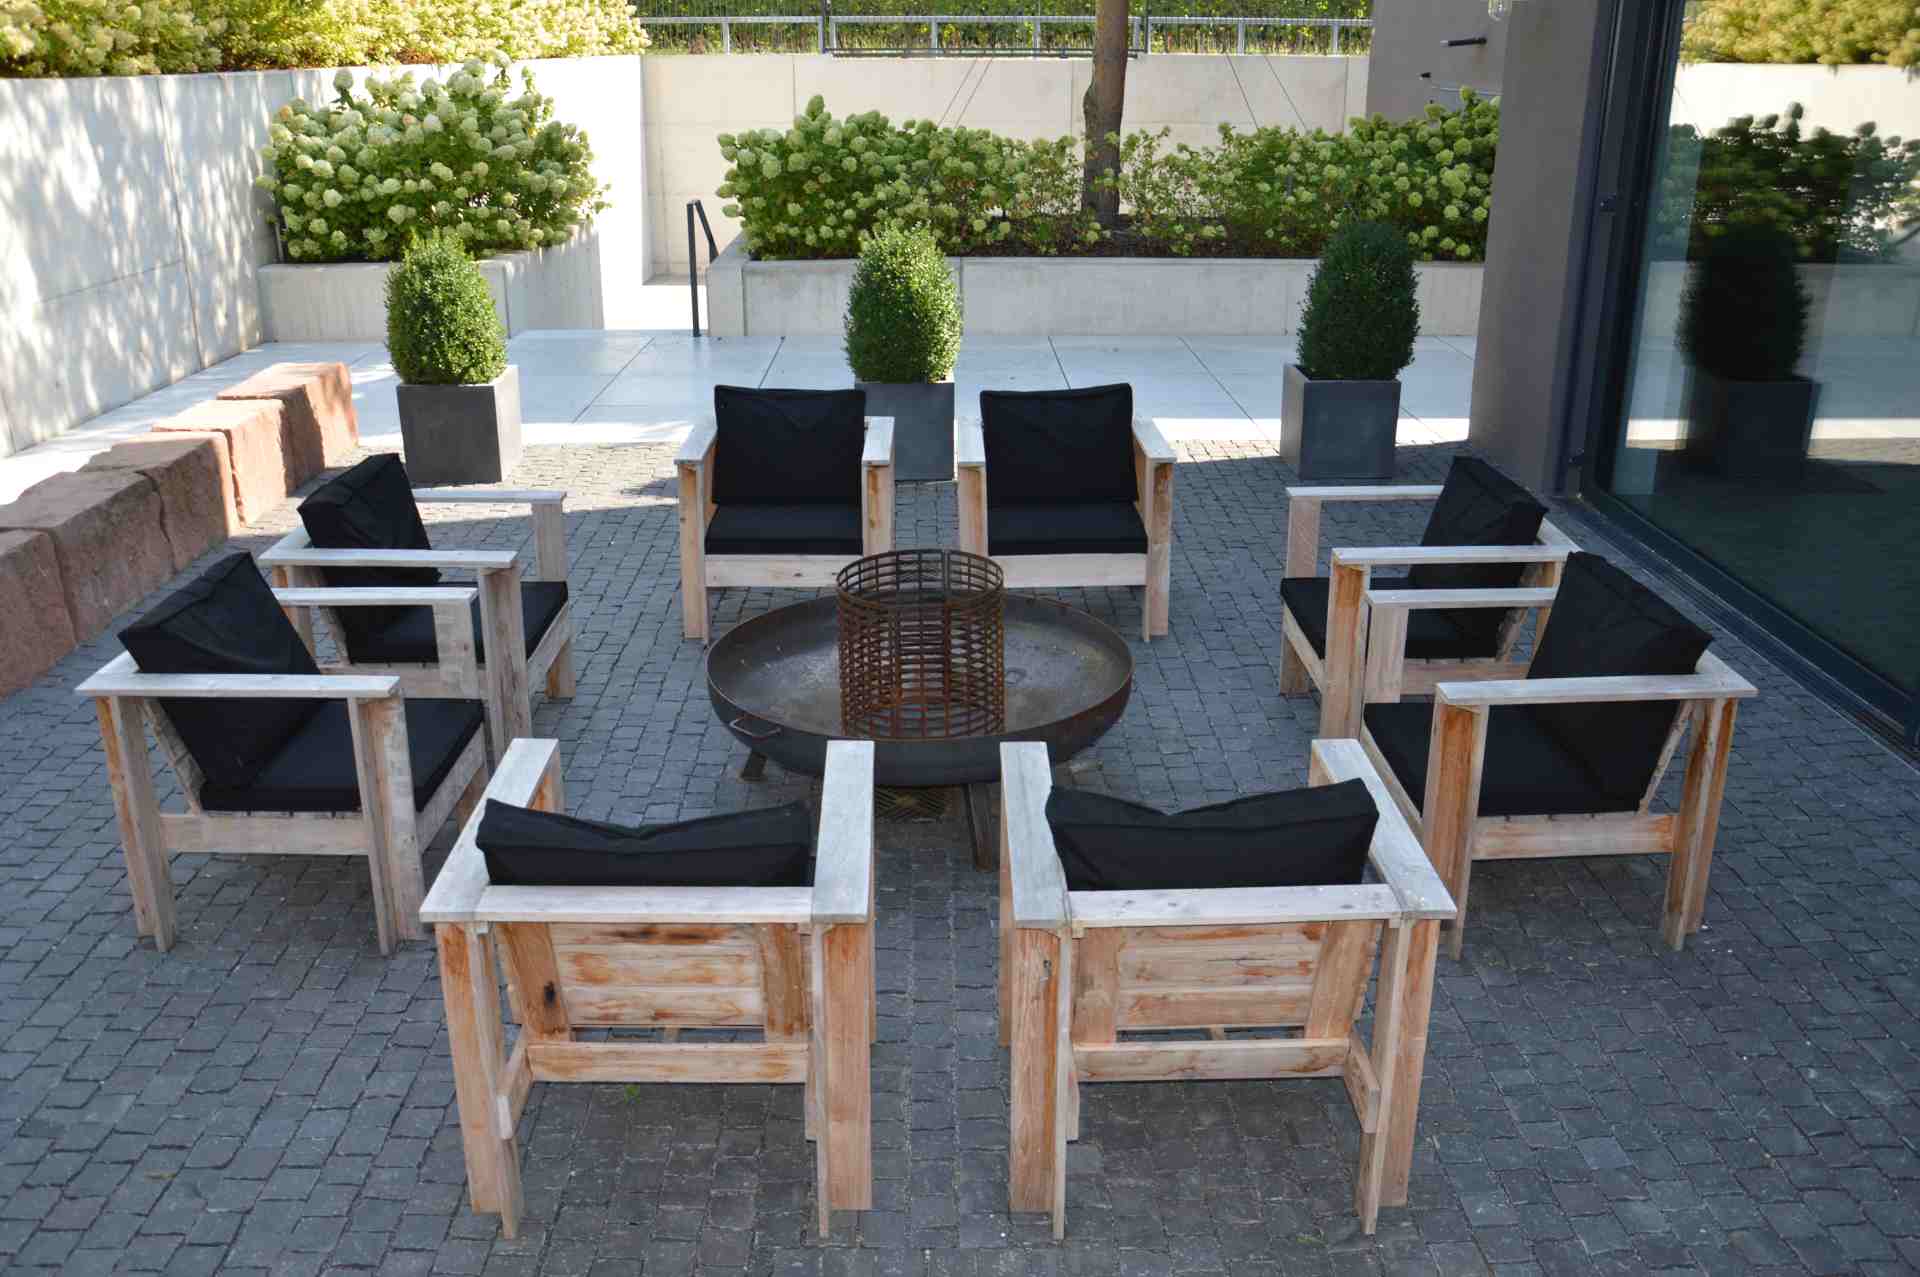 Die Gartenlounge Batten wurde azus recyceltem Teakholz gefertigt. Designet wurde sie von der Marke Jan Kurtz. Der Sessel hat ein skandinavisches Design.